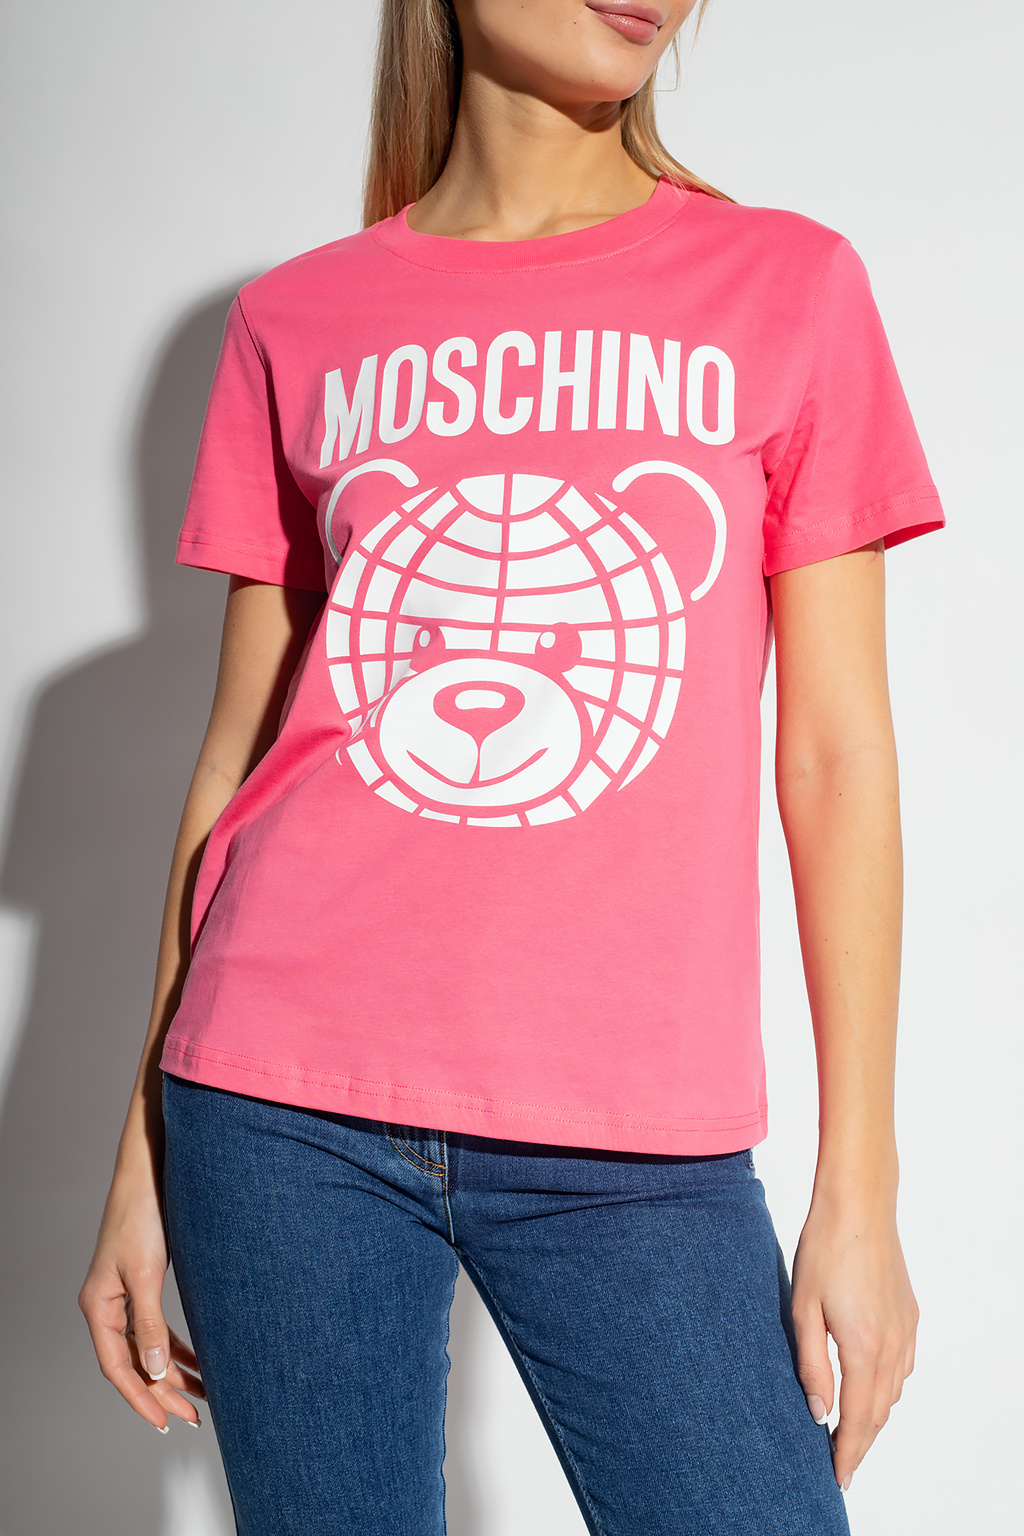 Moschino Cities Paris T-shirt